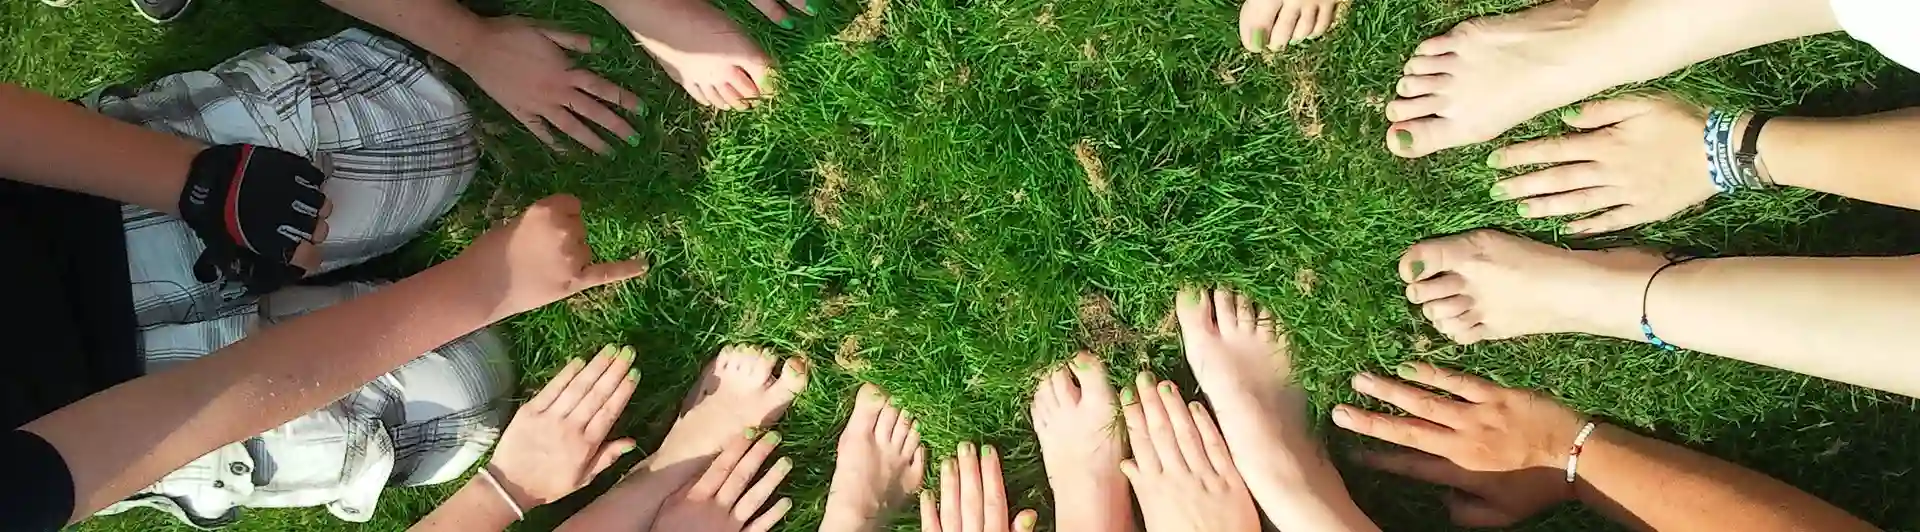 Händer och fötter